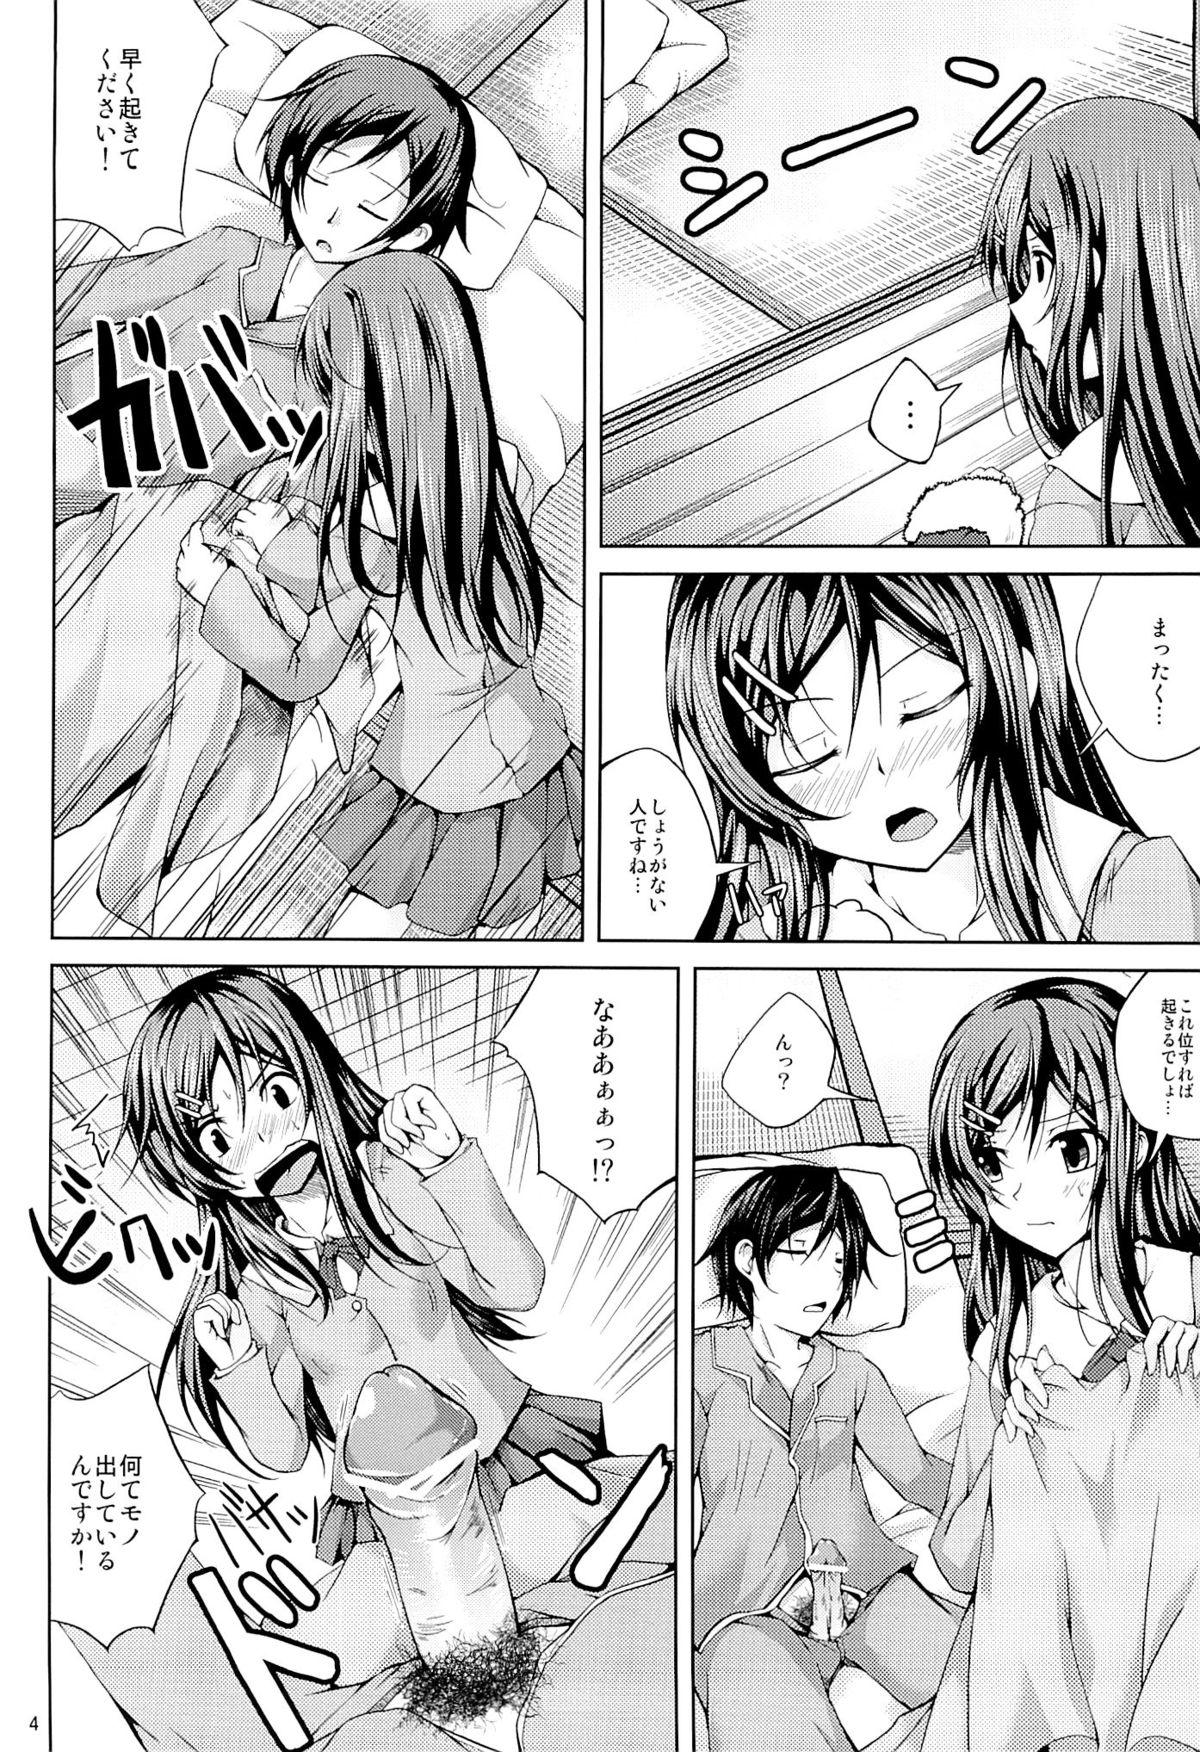 Kissing Koiiro Moyou 3 - Ore no imouto ga konna ni kawaii wake ga nai Thuylinh - Page 3